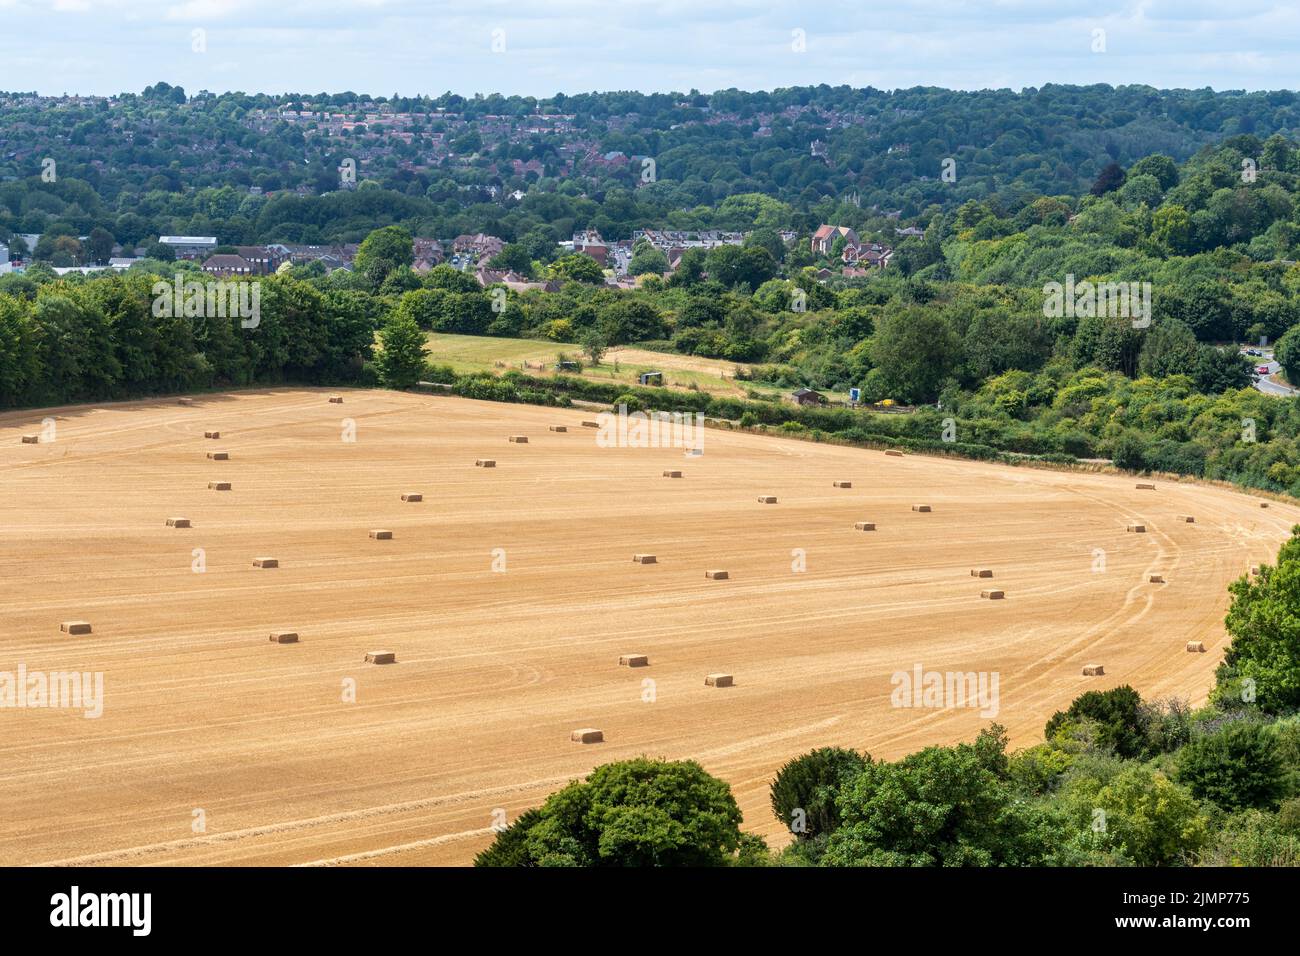 Vue de Winchester avec des balles de champs de maïs et de foin au premier plan en août ou en été prises de Magdaalen Hill, Hampshire, Angleterre, Royaume-Uni Banque D'Images